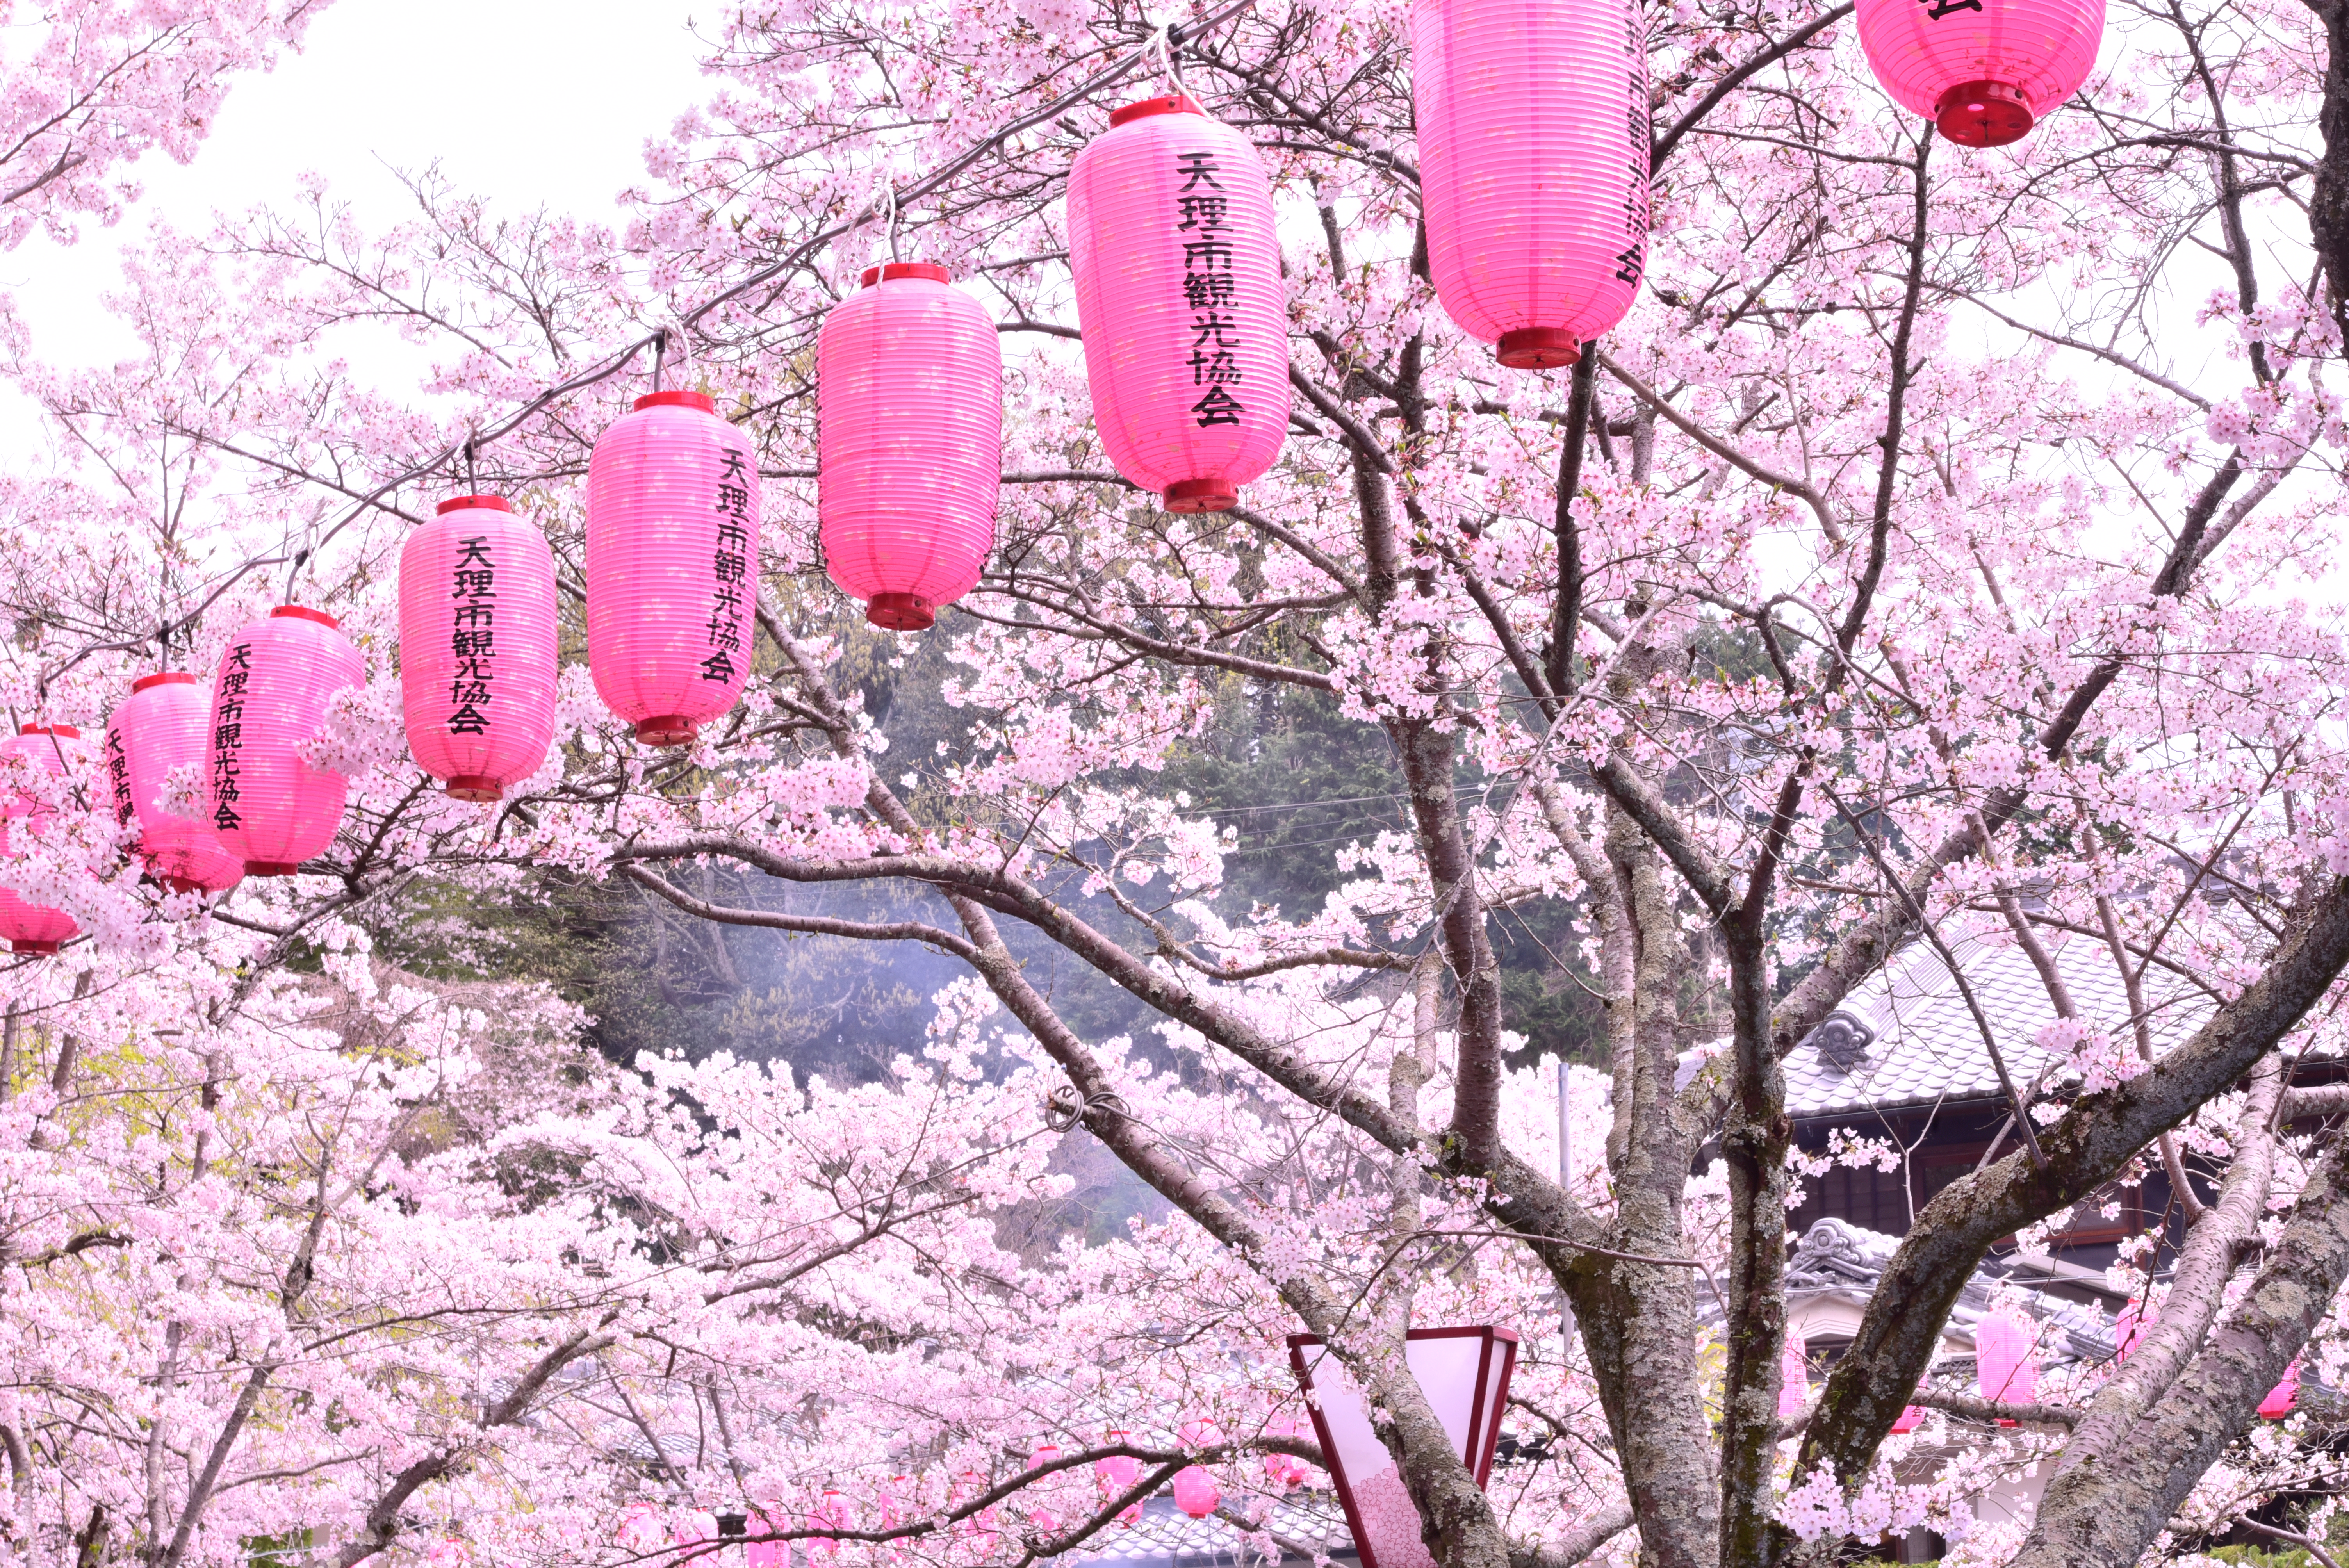 石上神宮外苑公園の桜の写真